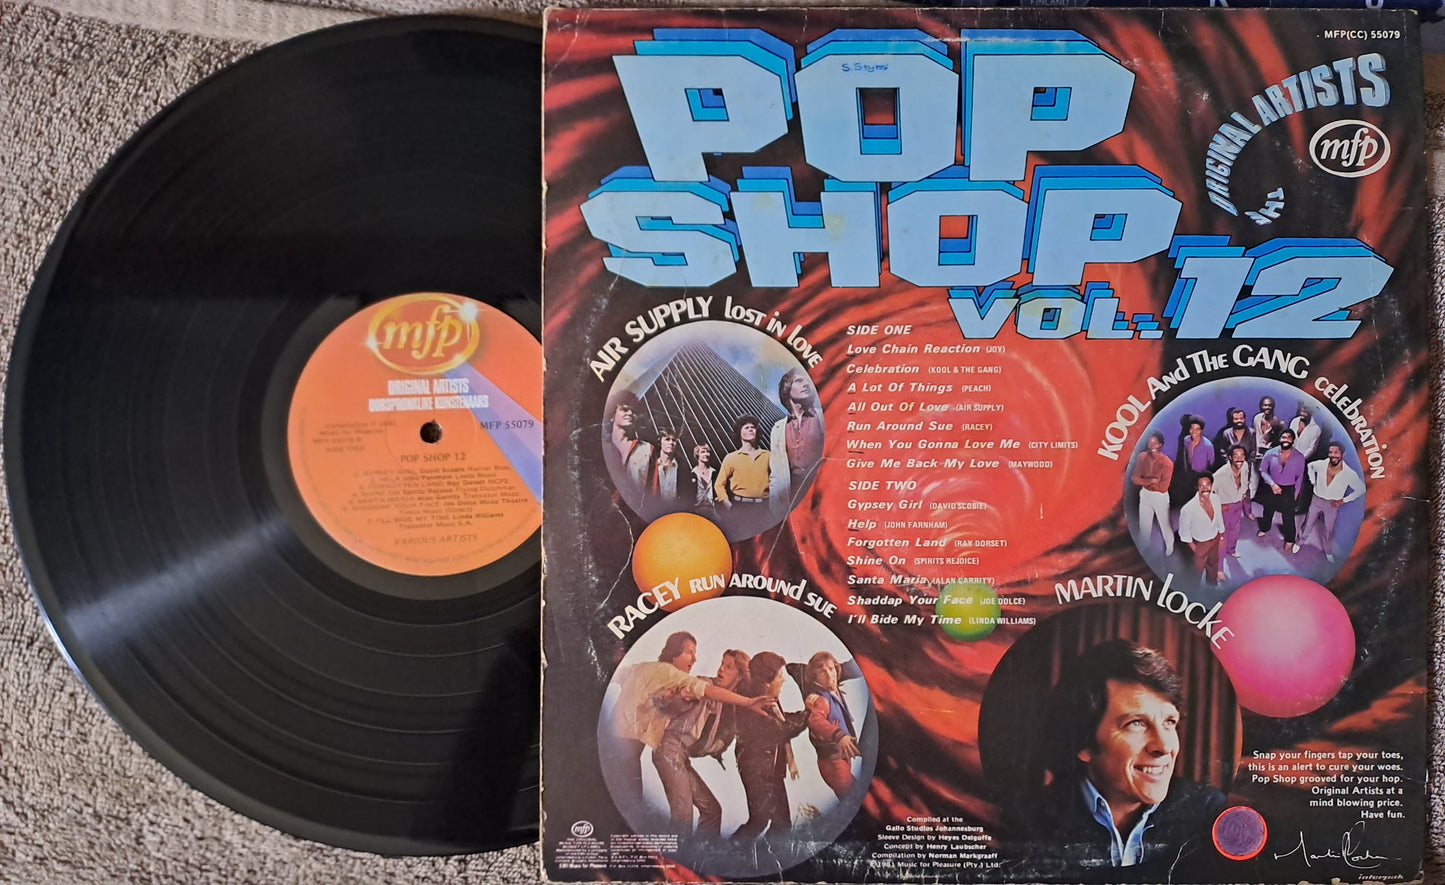 Various Artists - Pop Shop Vol. 12